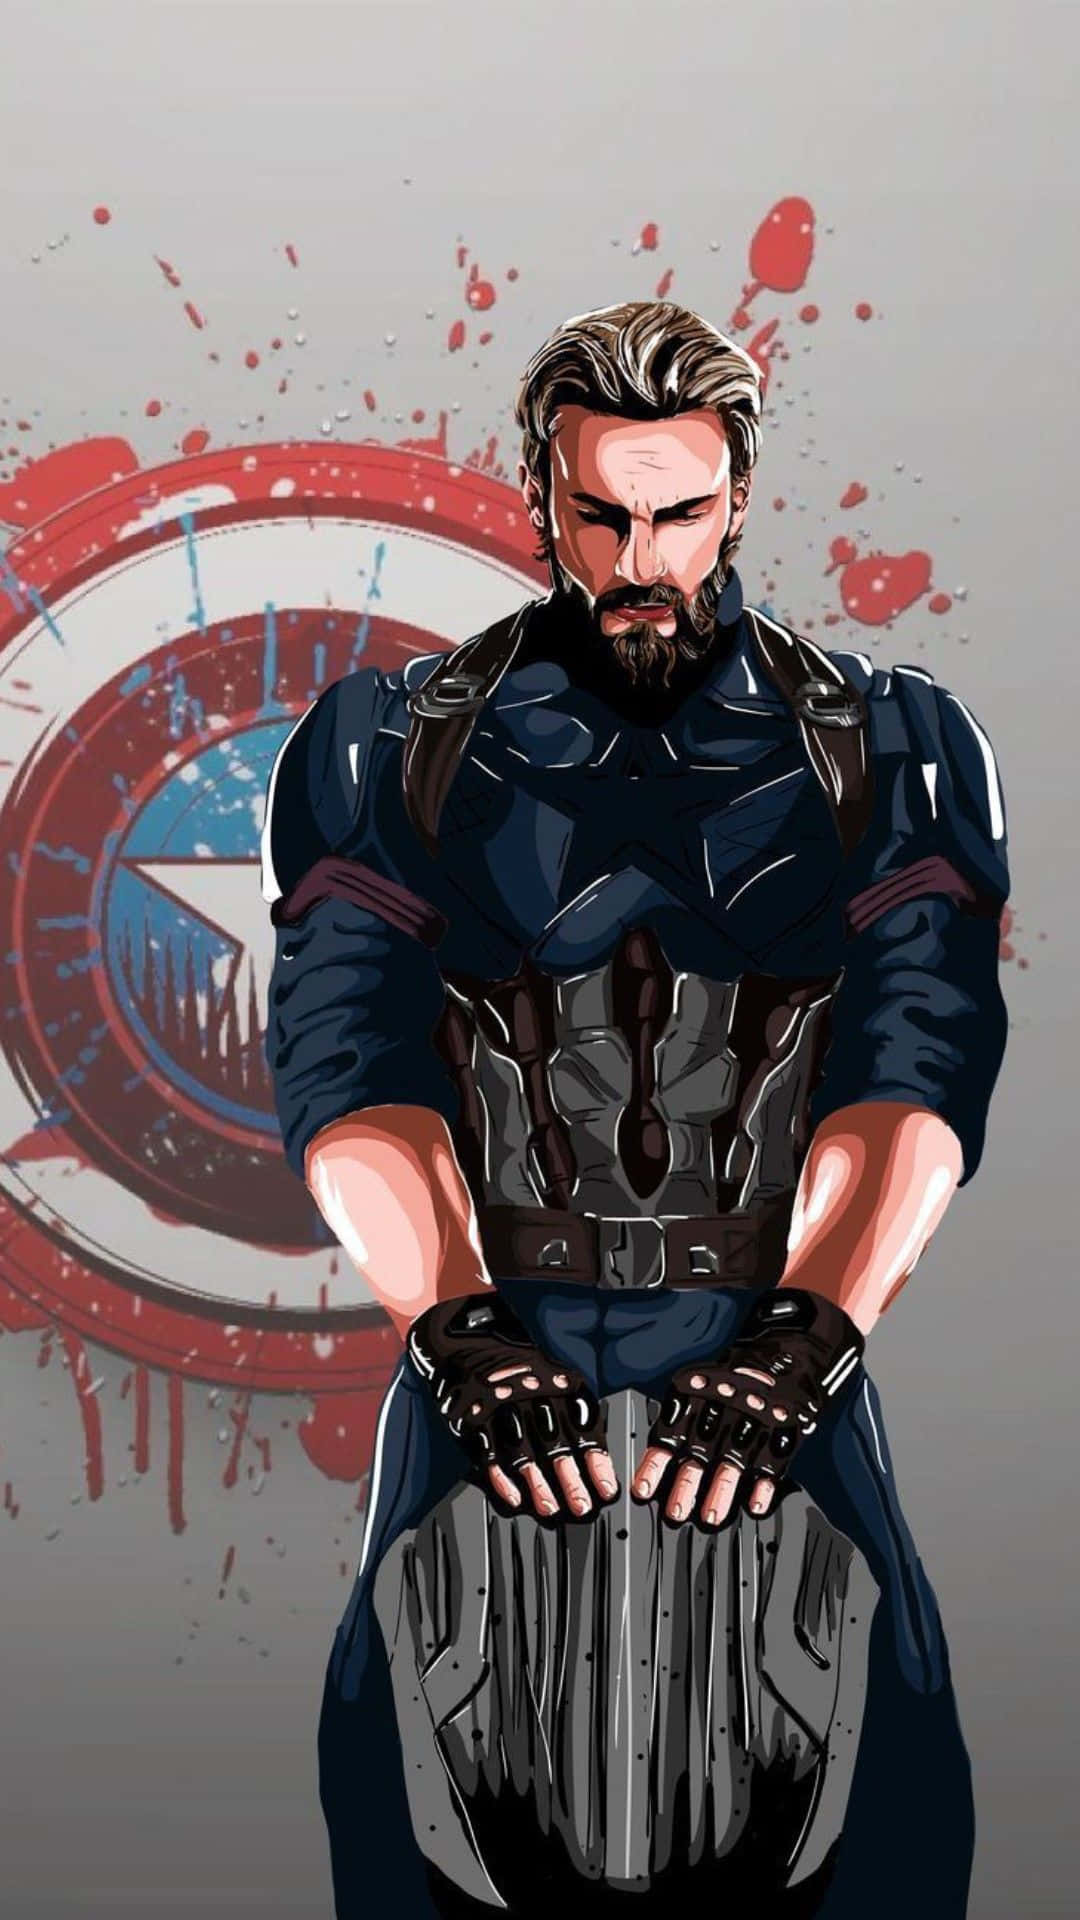 Androidanvändare Överallt, Förena Er Under Flaggan Av Captain America.